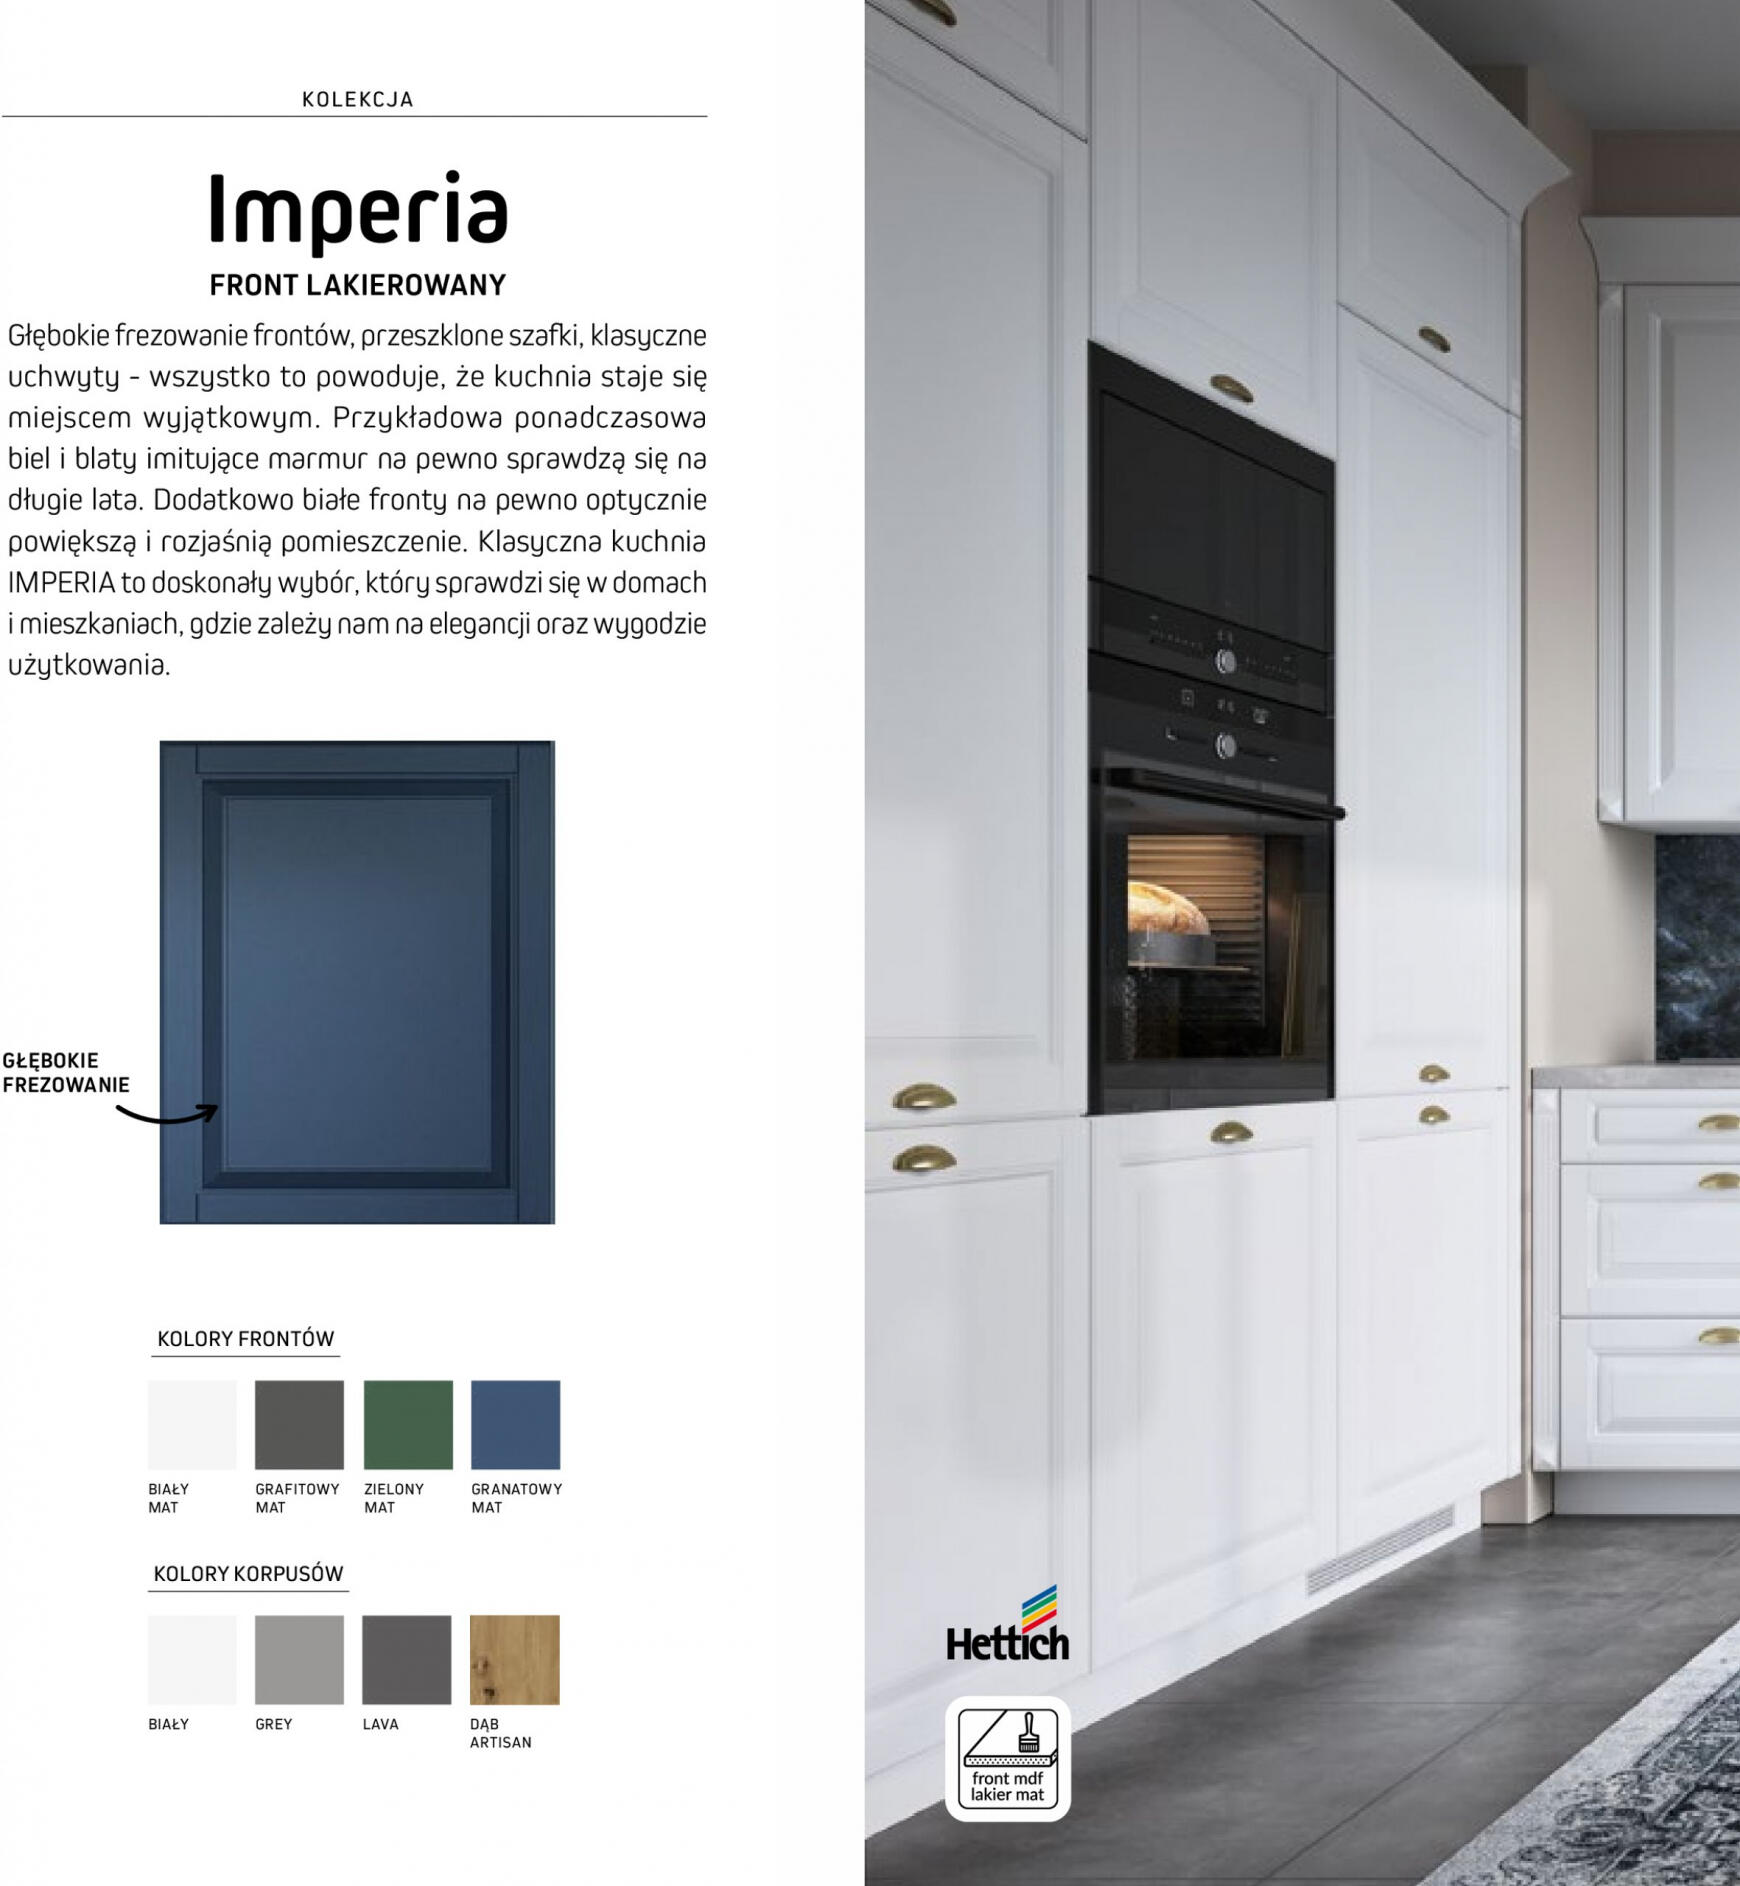 komfort - Komfort - Katalog kuchnie - page: 16